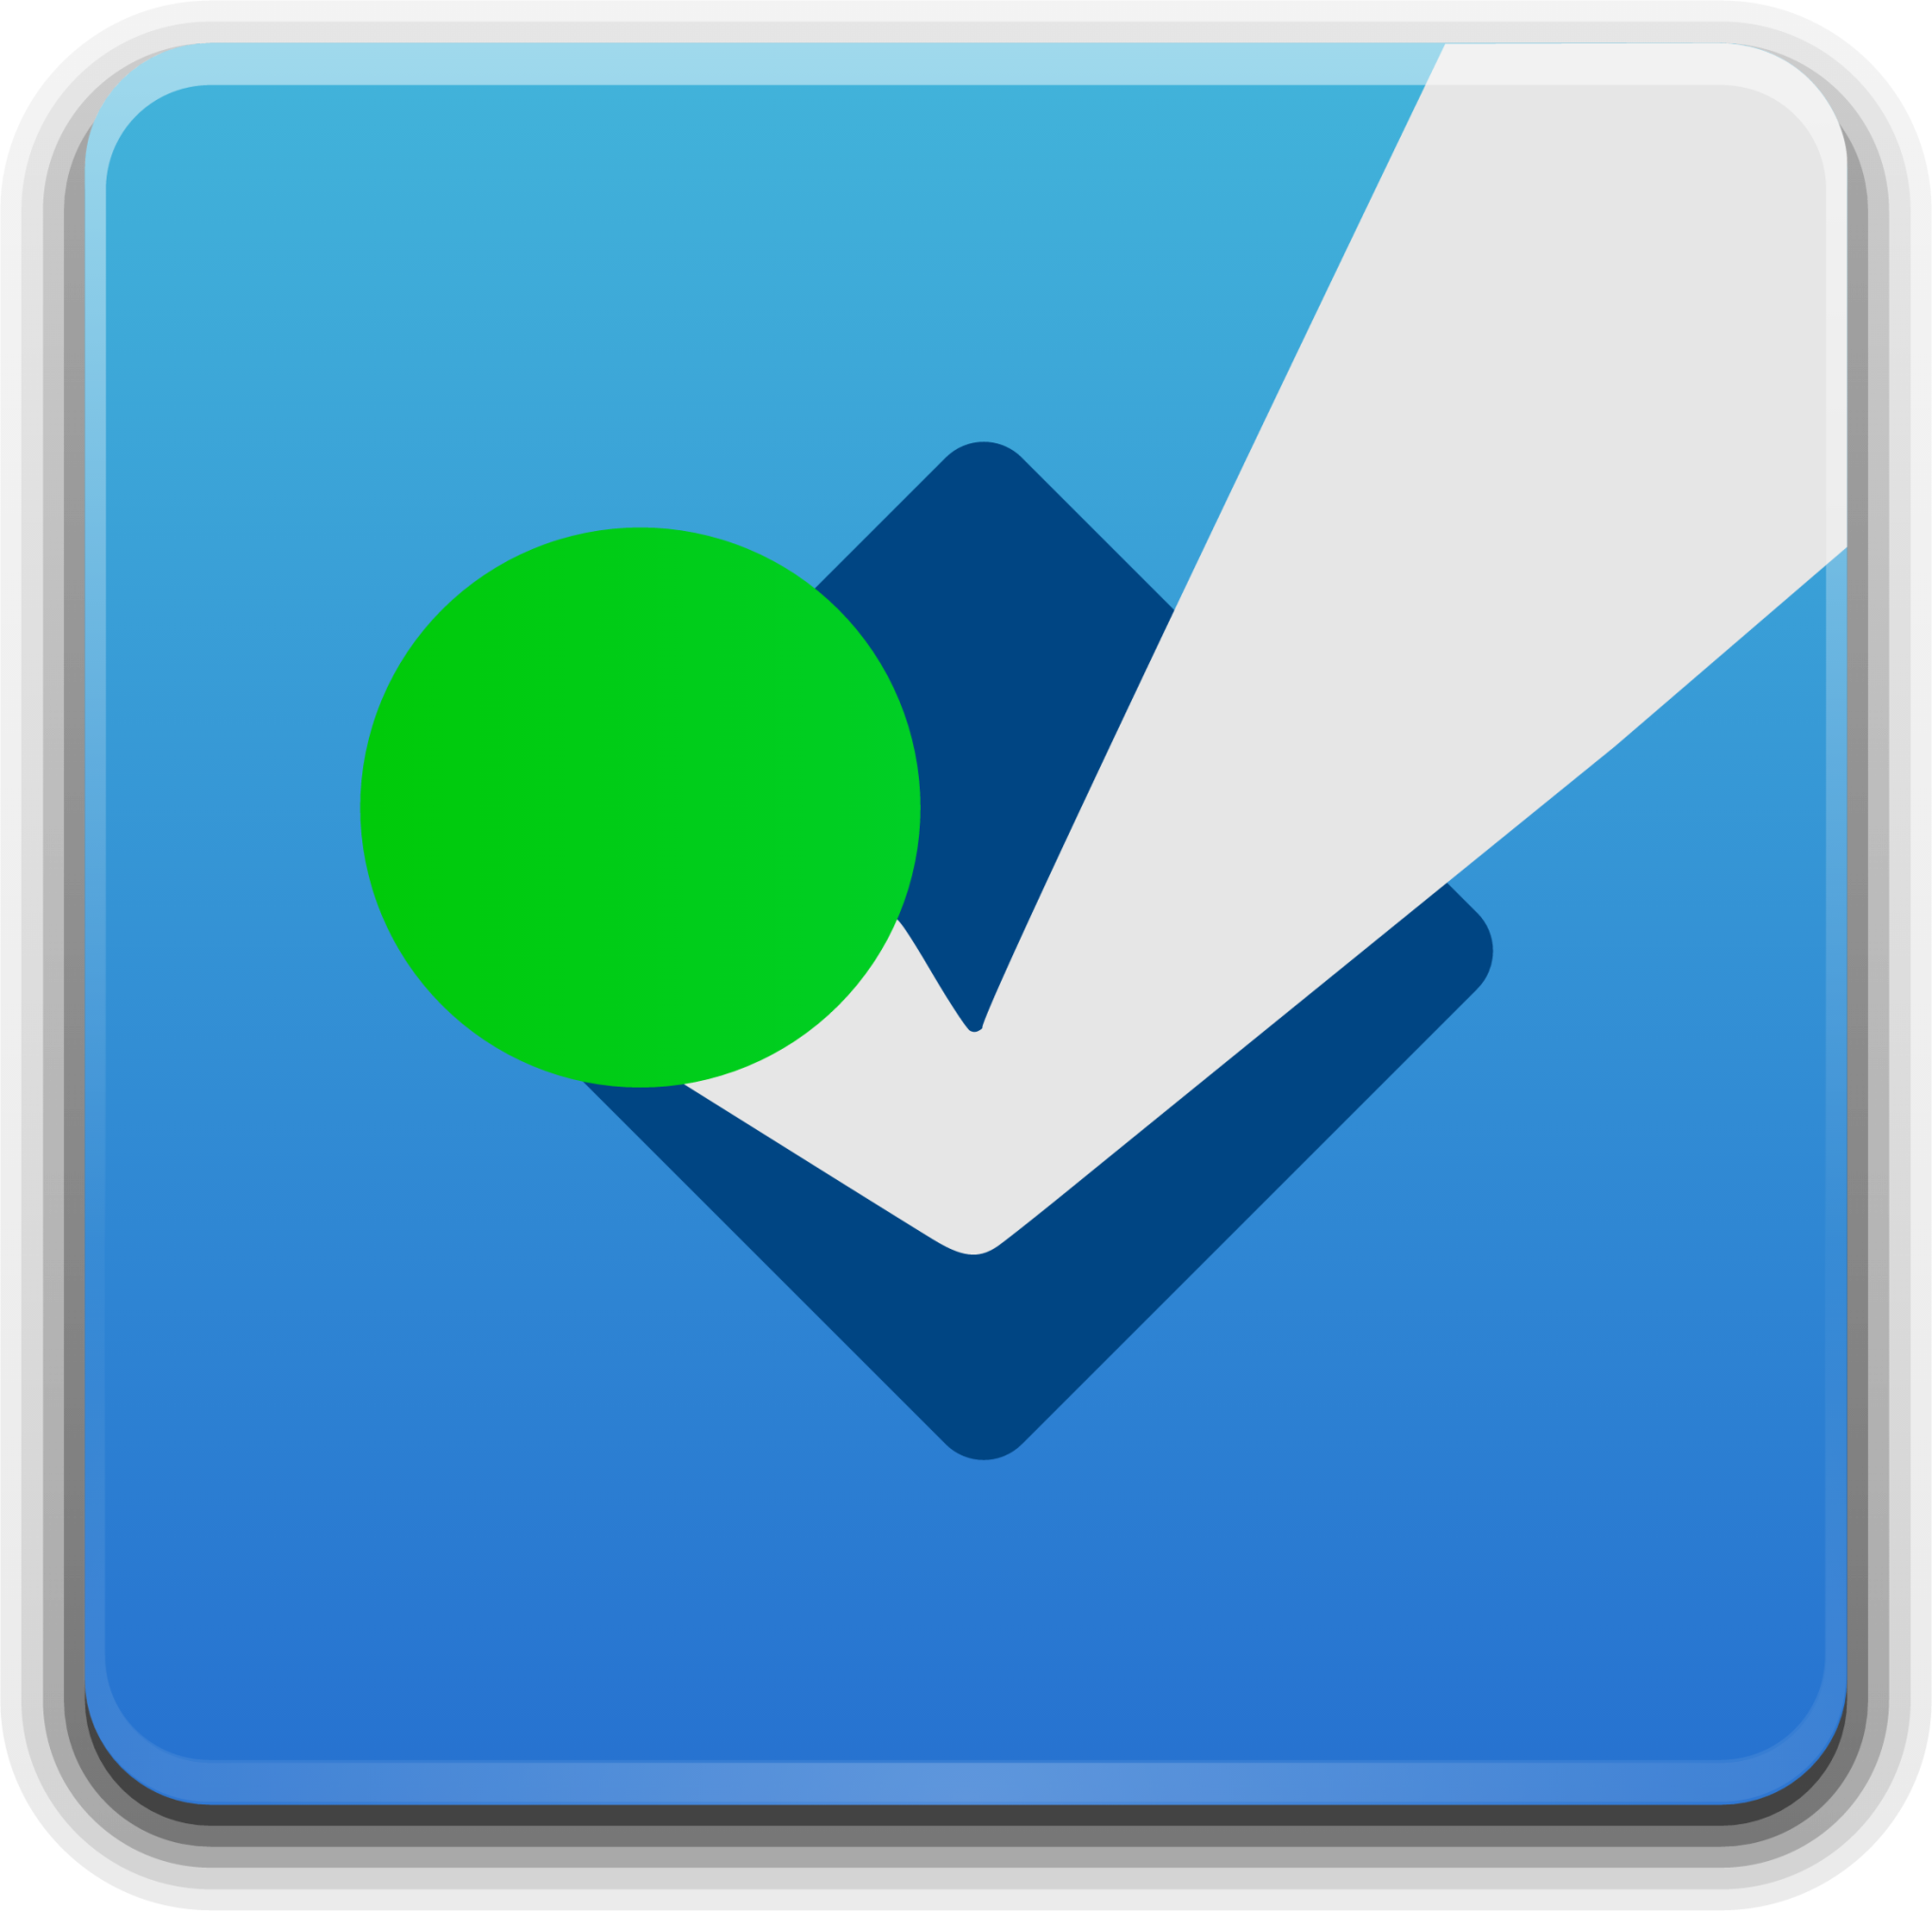 foursquare app logo png